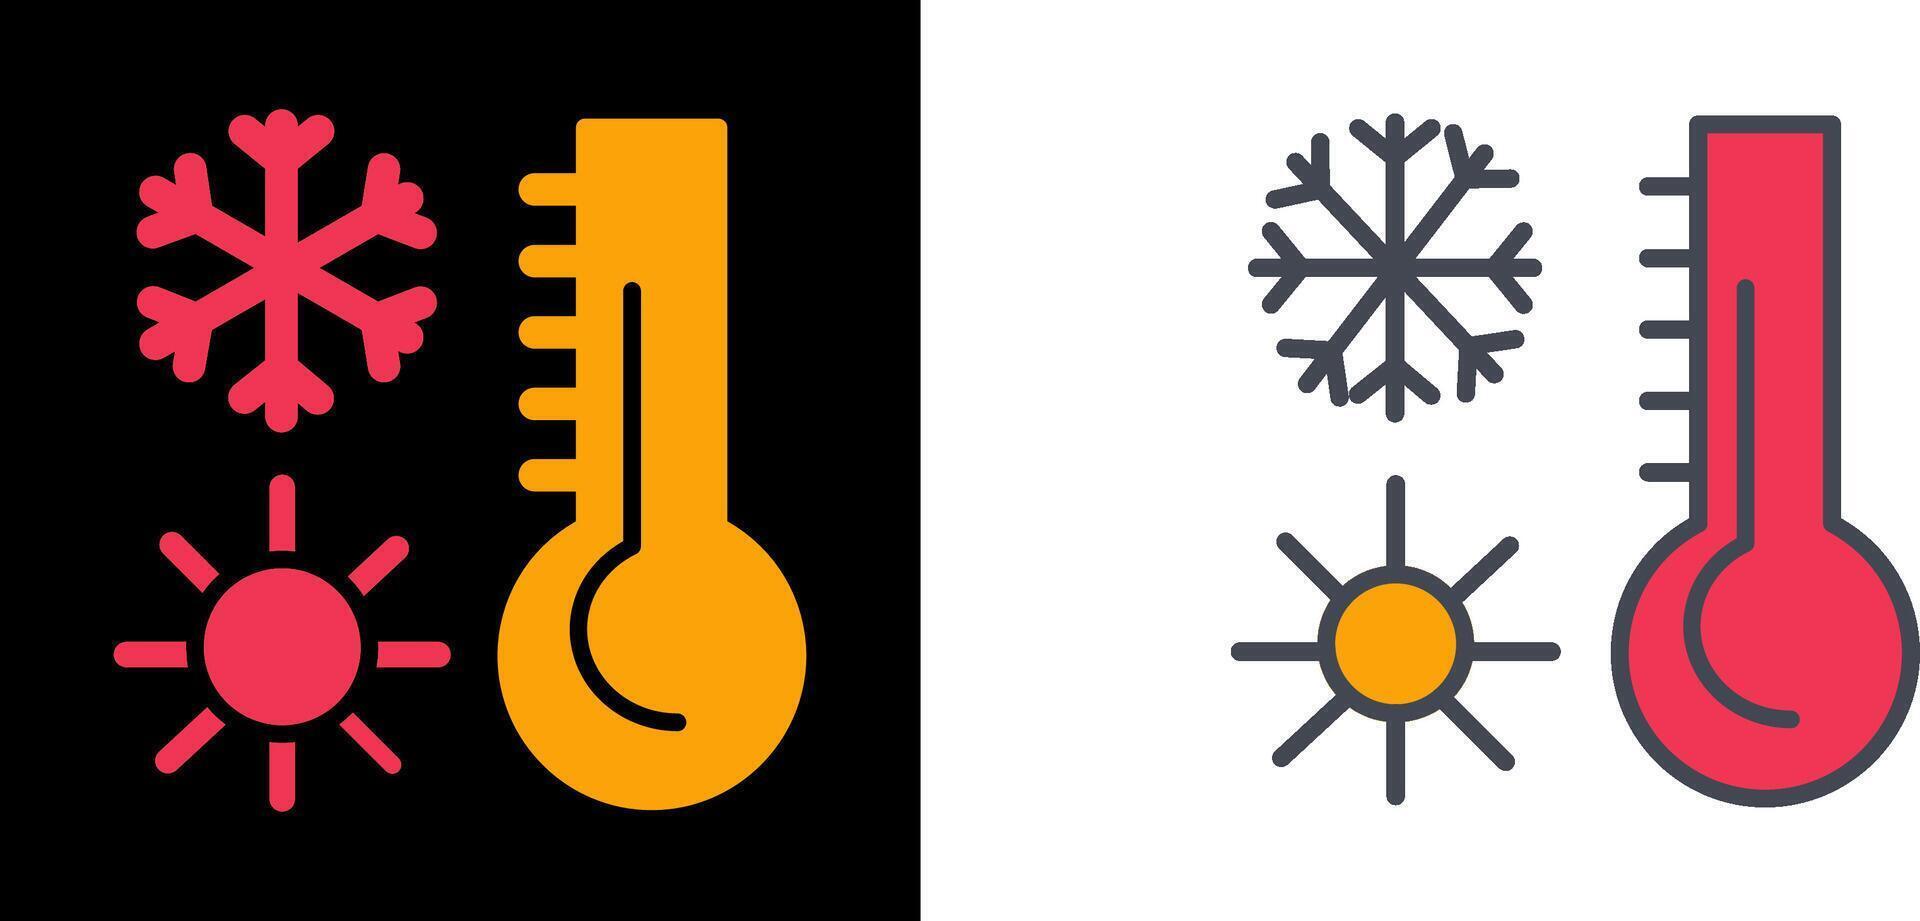 termometer ikon design vektor